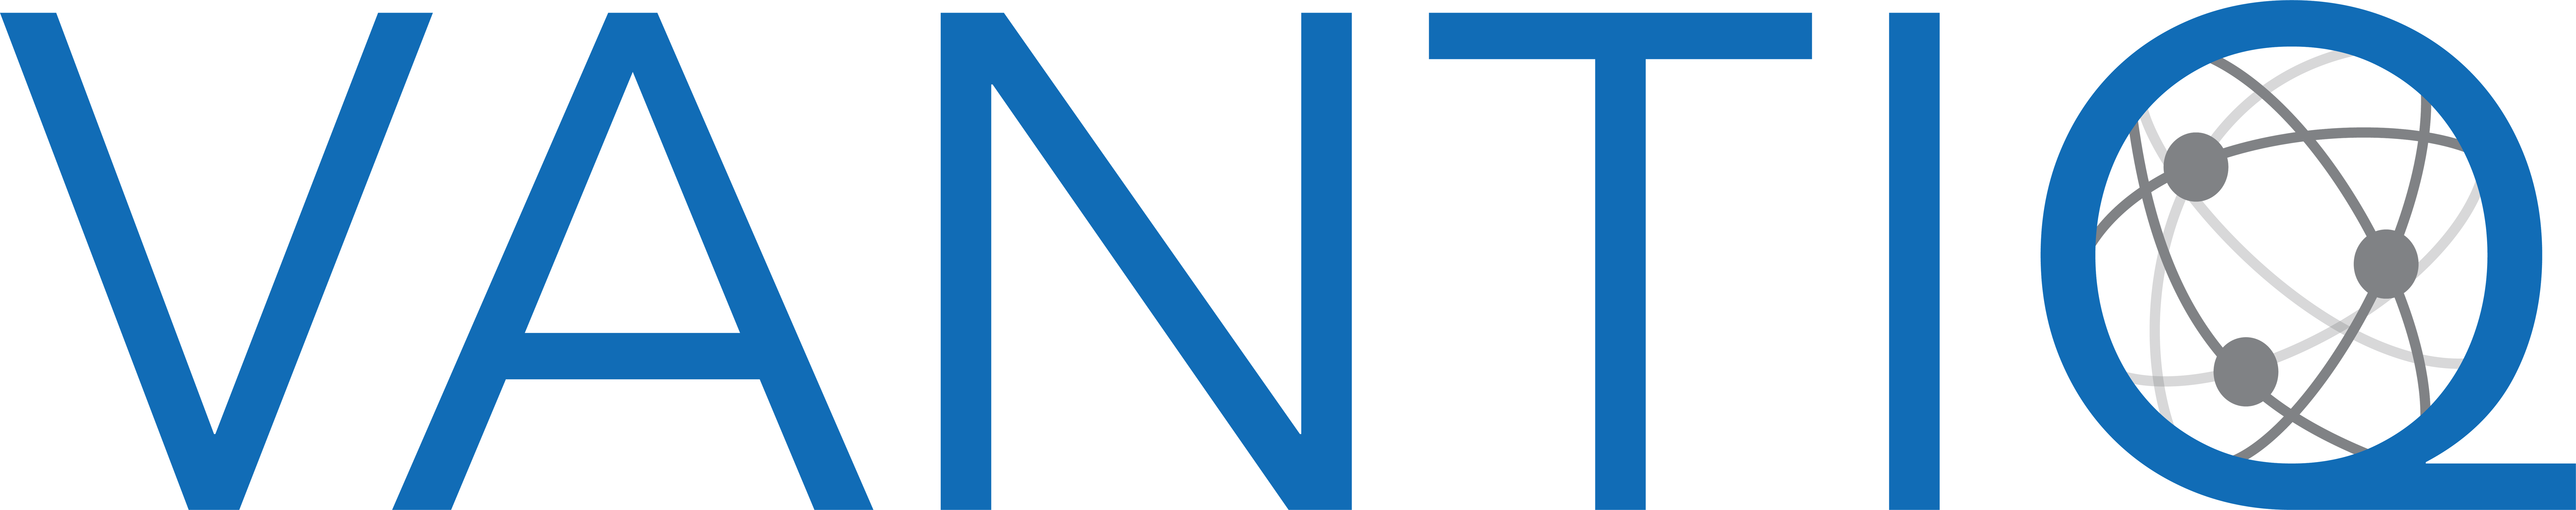 Vantiq_Logo_NOtag_color.png